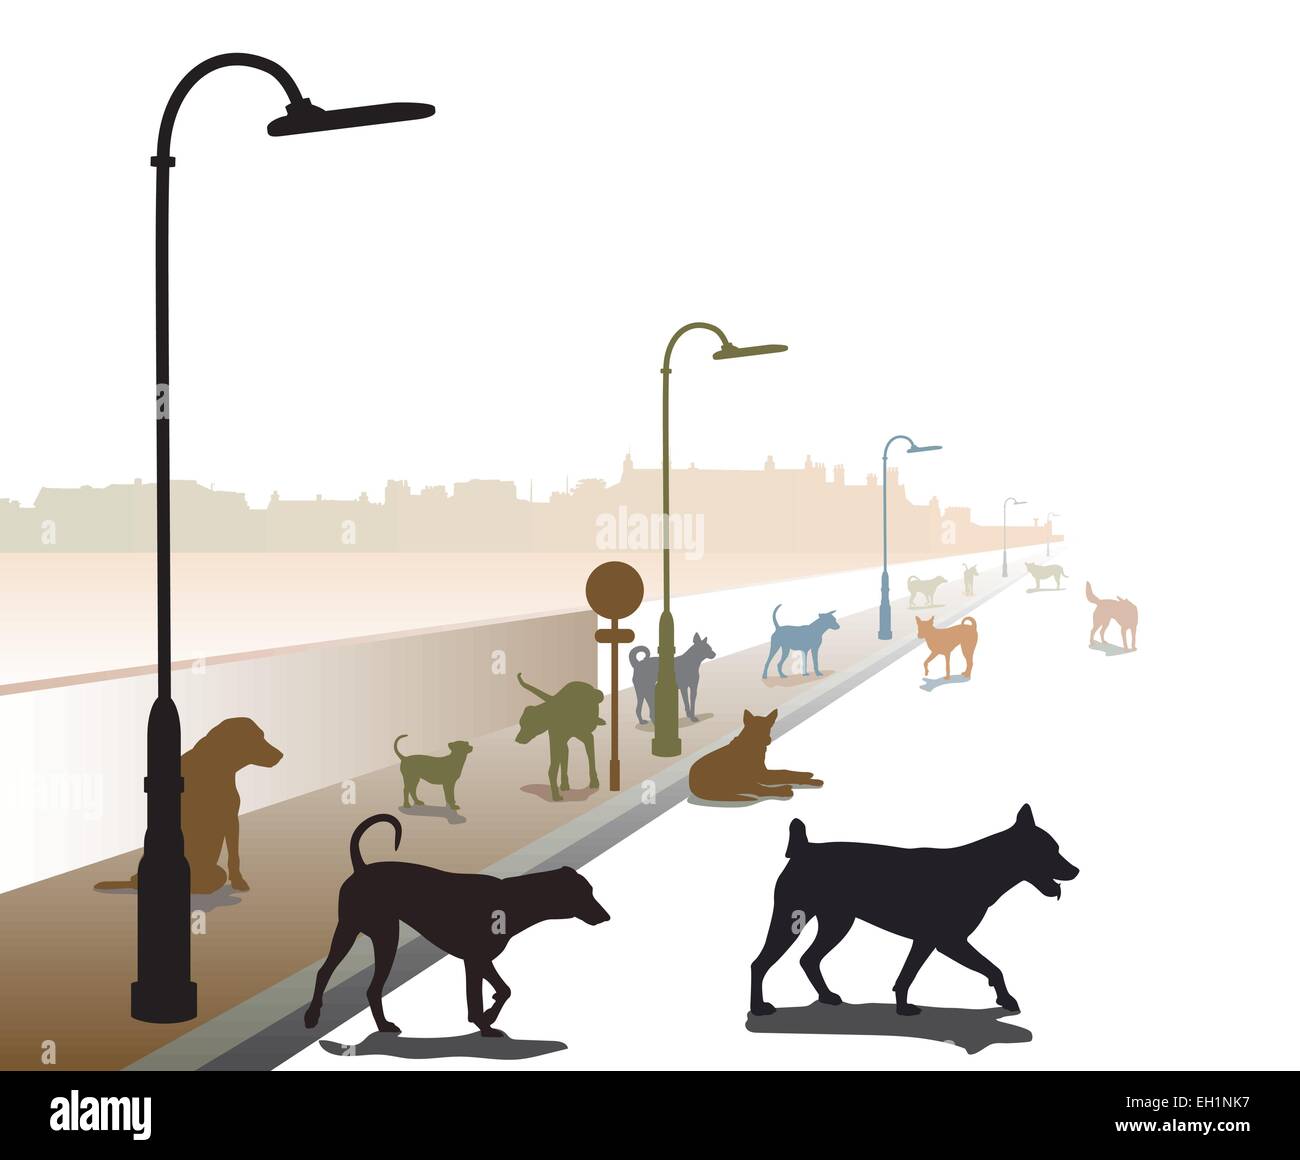 Ilustración vectorial editable de un variopinto grupo de perros callejeros en una carretera solitaria Ilustración del Vector